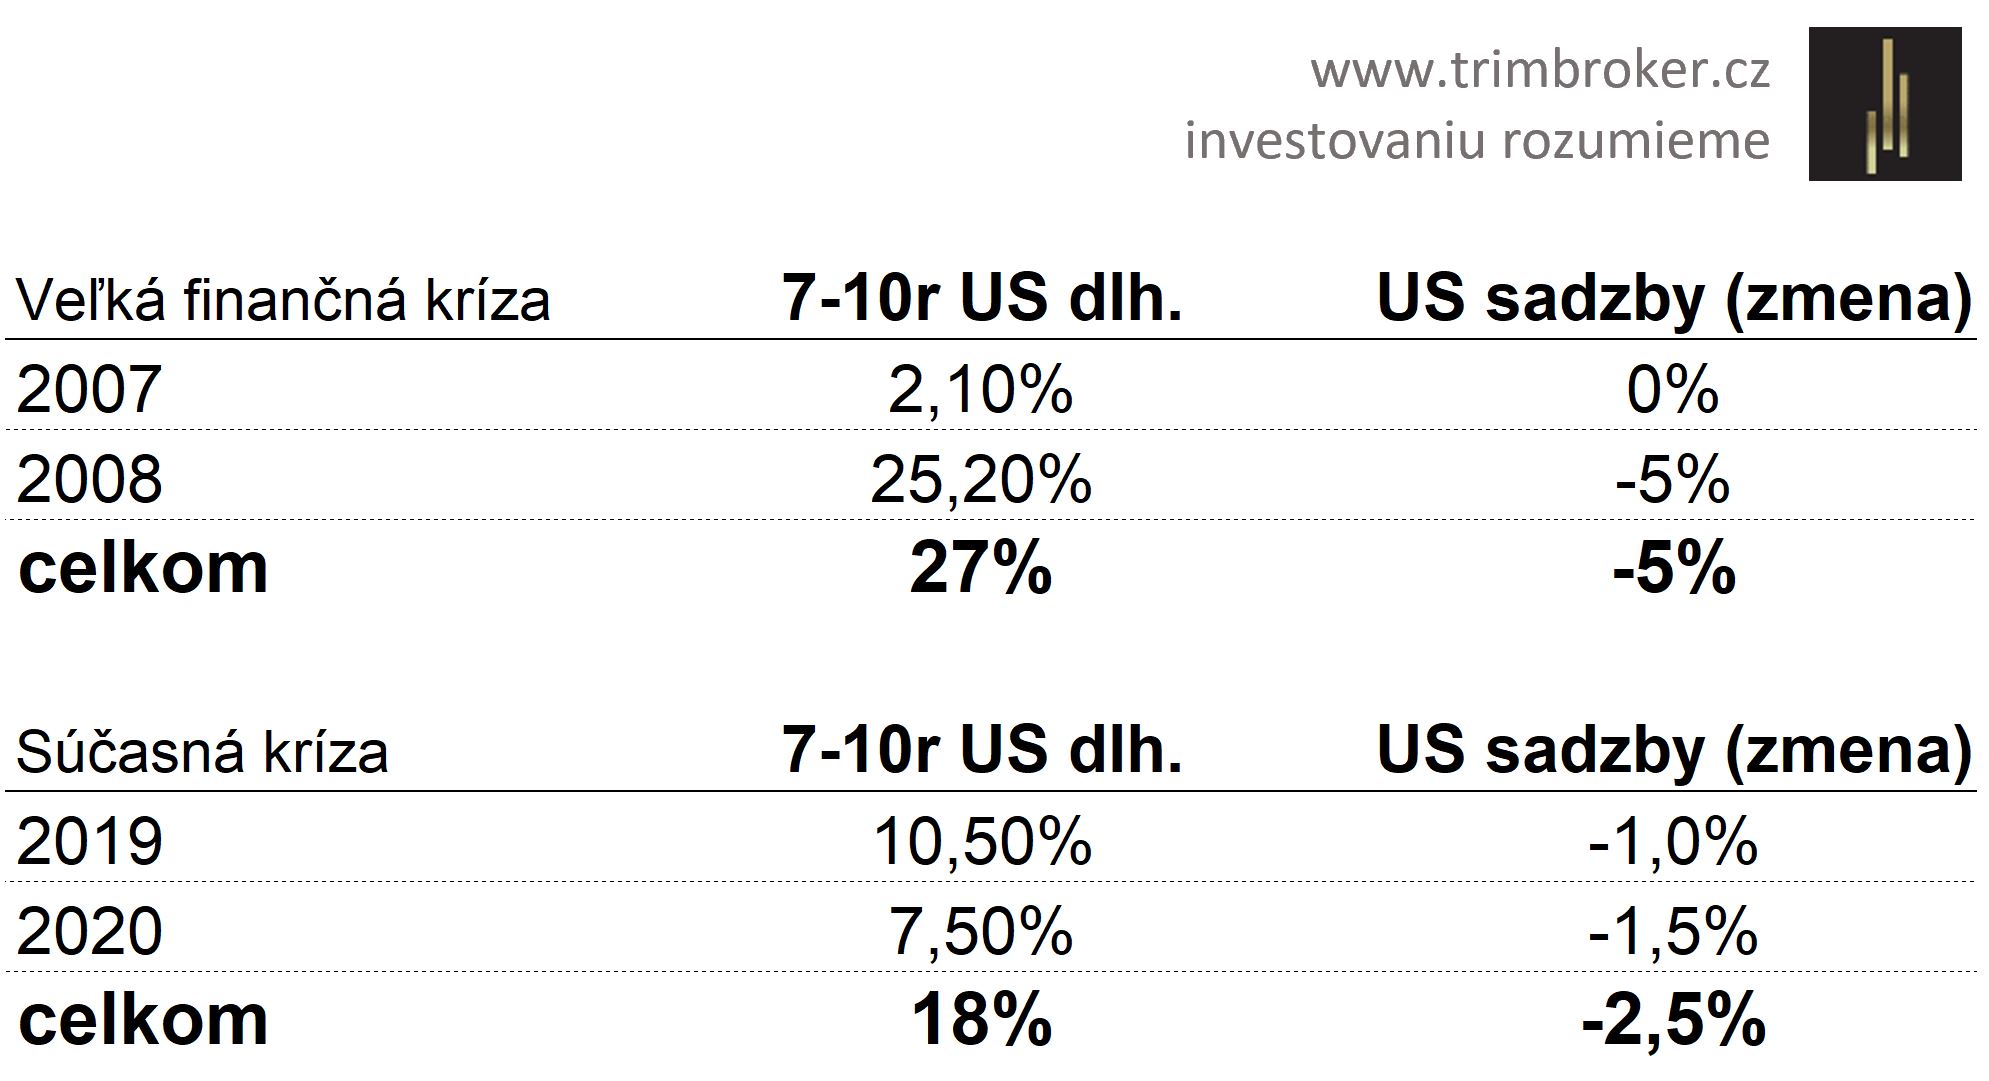 Zdroj: www.trimbroker.cz, rast ceny amerických dlhopisov (ETF. CSBGU0, 7-10r) v roku krízy a roka kríze predchádzajúceho. 